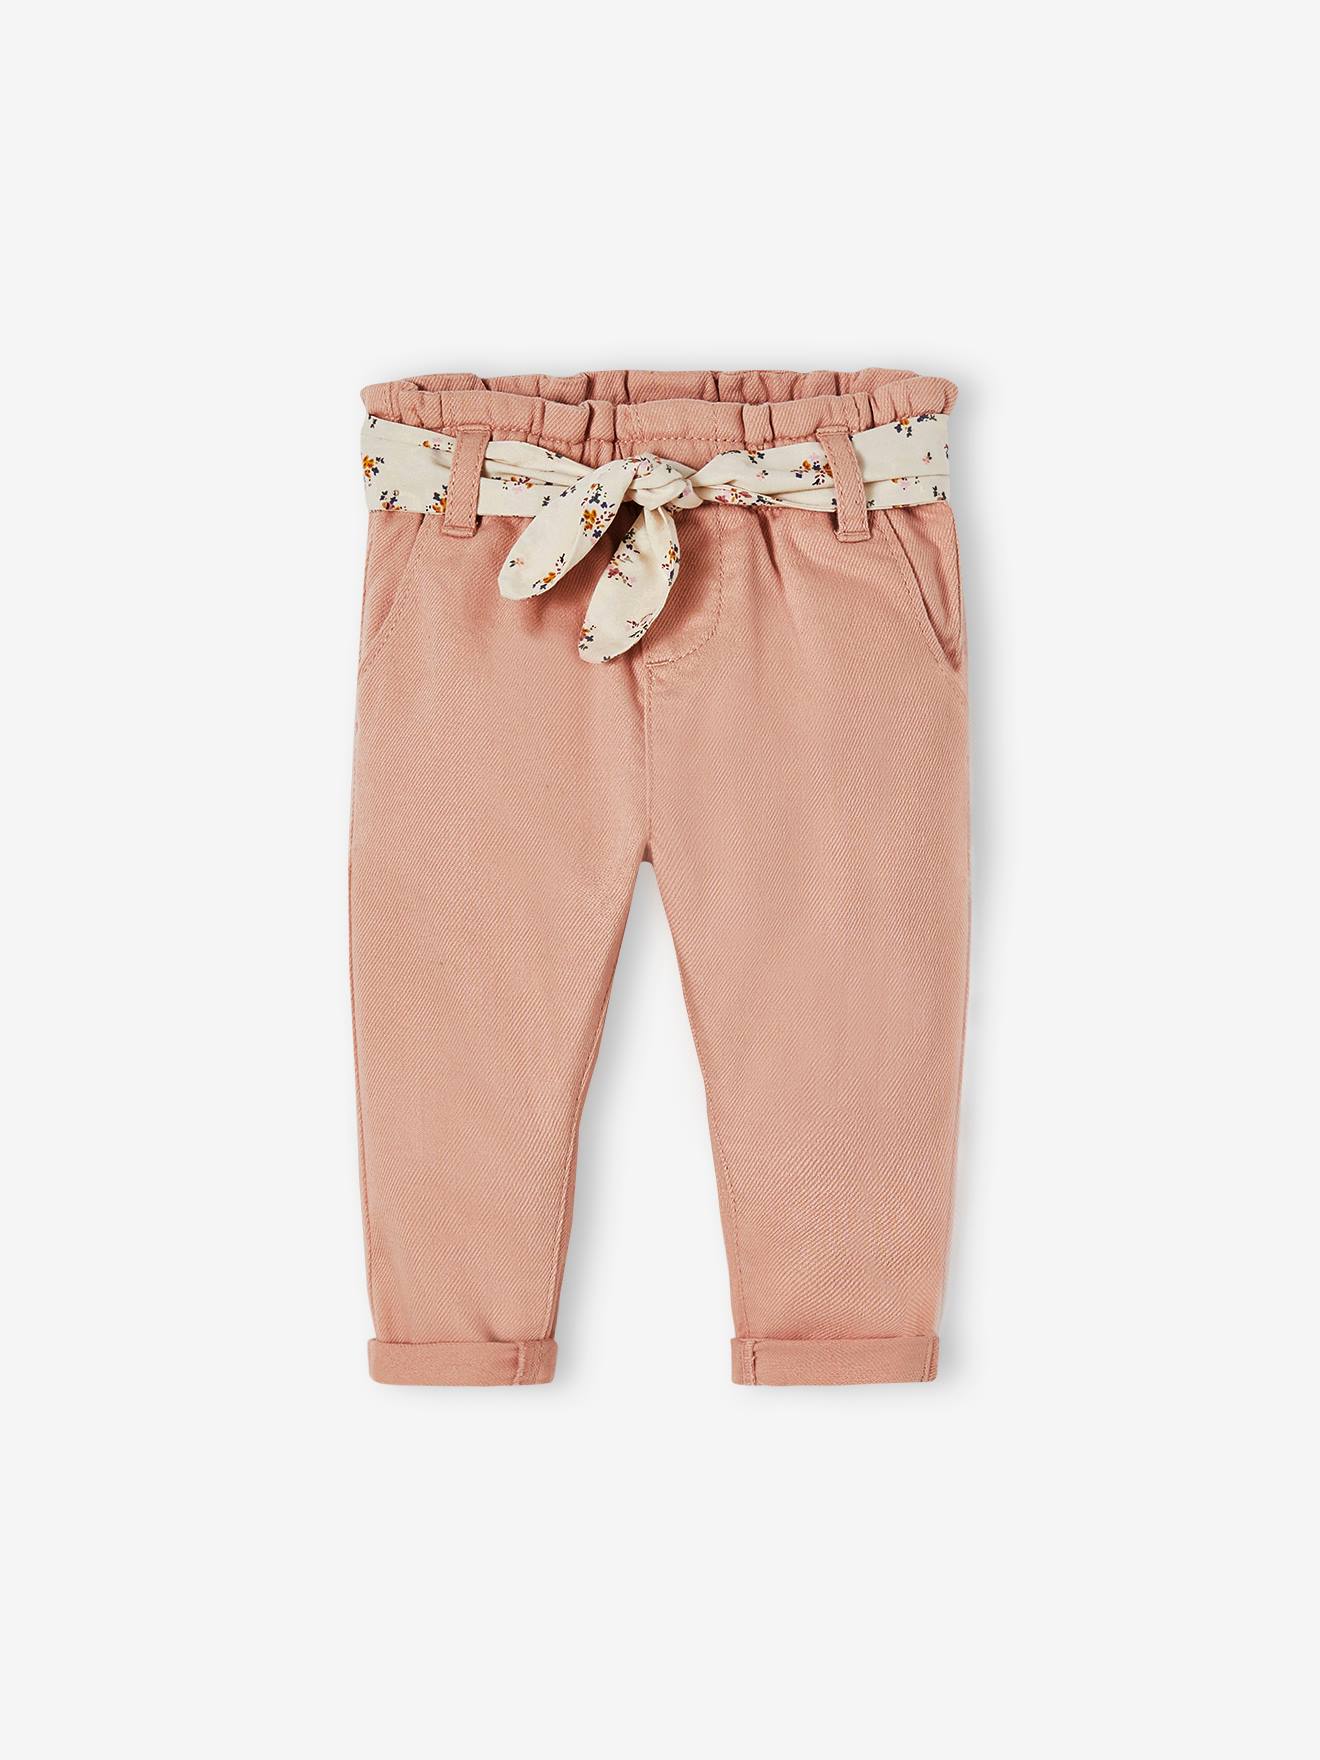 Pantalon paperbag bébé avec ceinture rose poudré